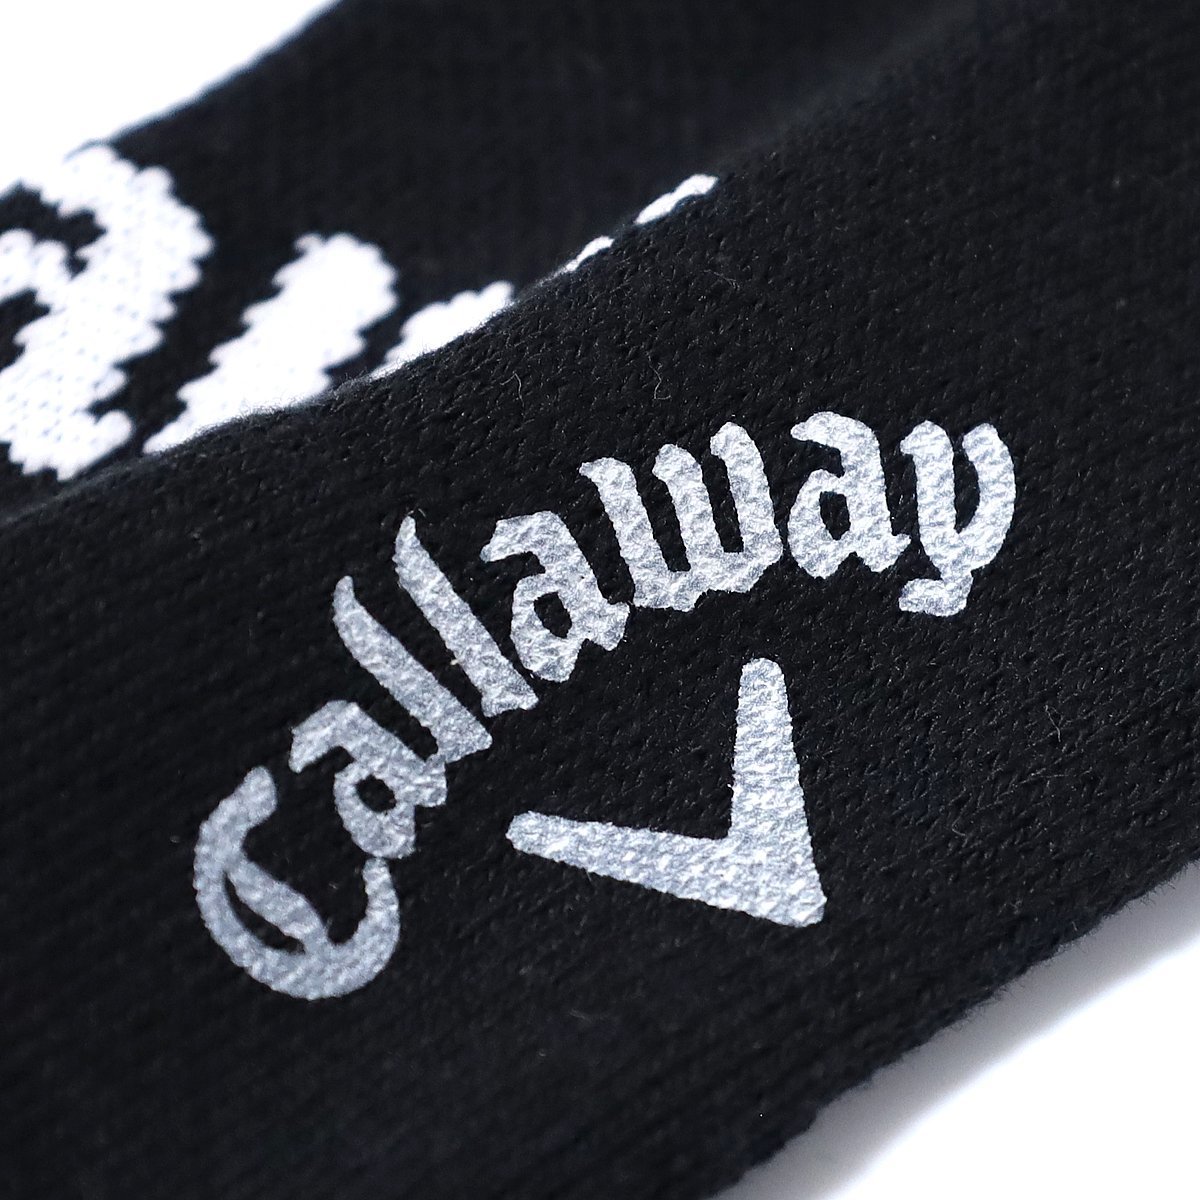 新品 Callaway キャロウェイ ゴルフ メンズ 靴下 セット 2足 ロゴ入り ブラック グレー アンクルソックス C21293101 ◆SJ1252BG_画像5